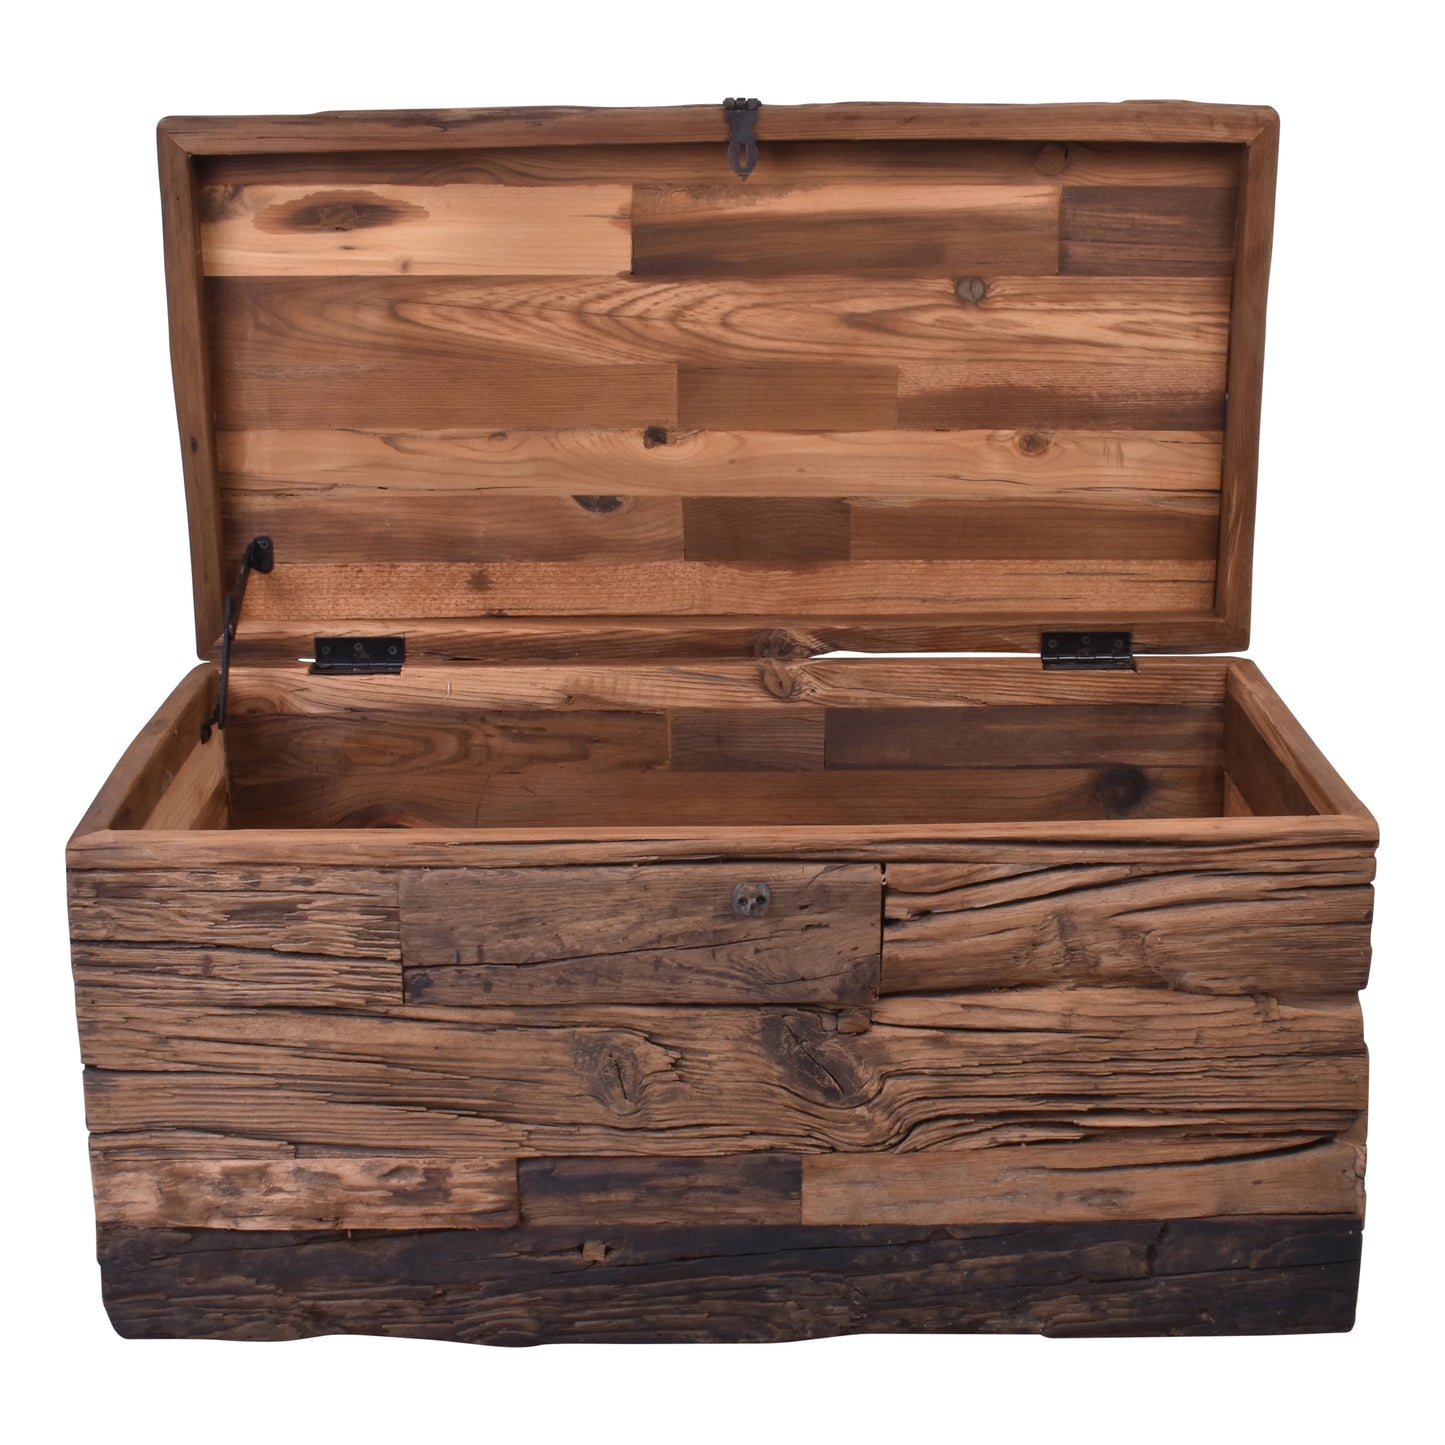 Wooden Drift Box